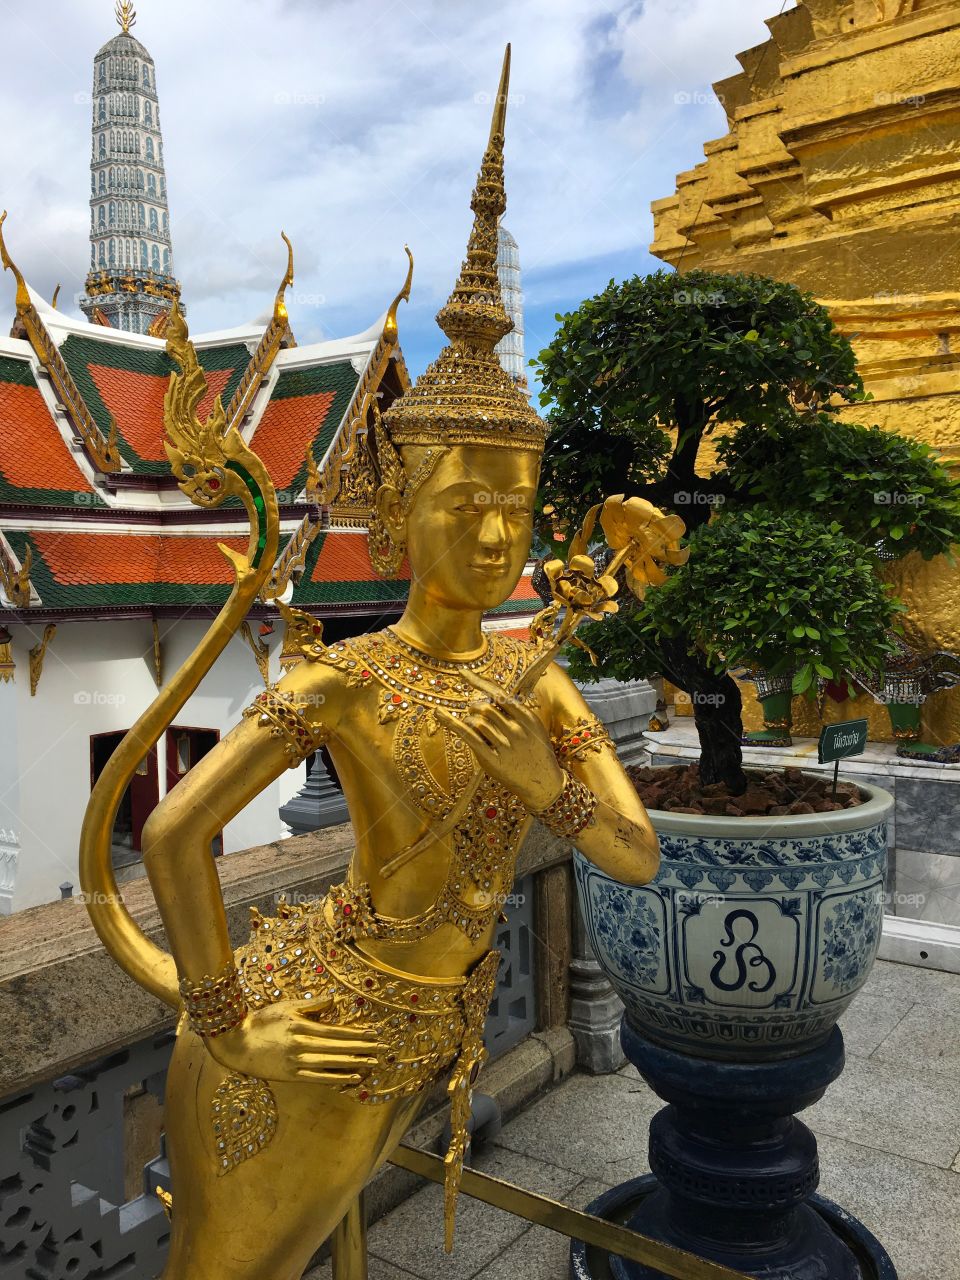 Grand Palace / Bangkok Thailand 63